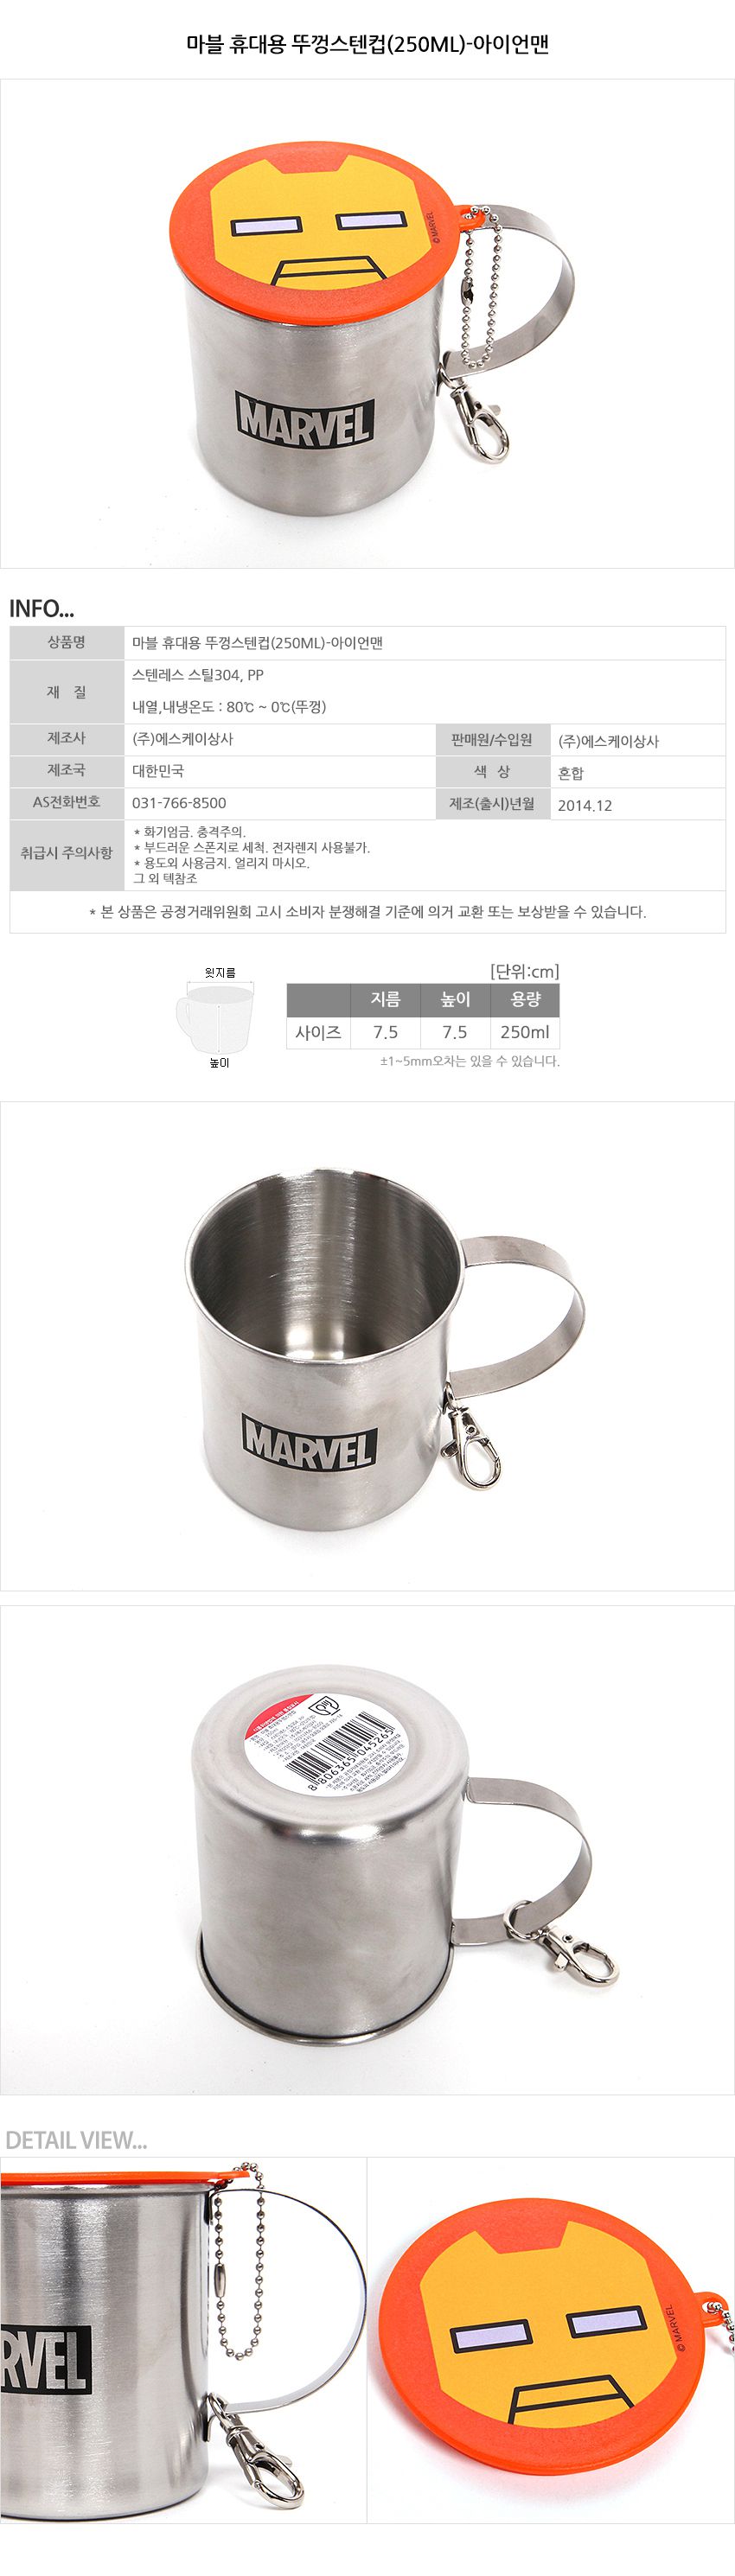 韓國製MARVEL不鏽鋼附蓋鋼杯/水杯【鋼鐵人】